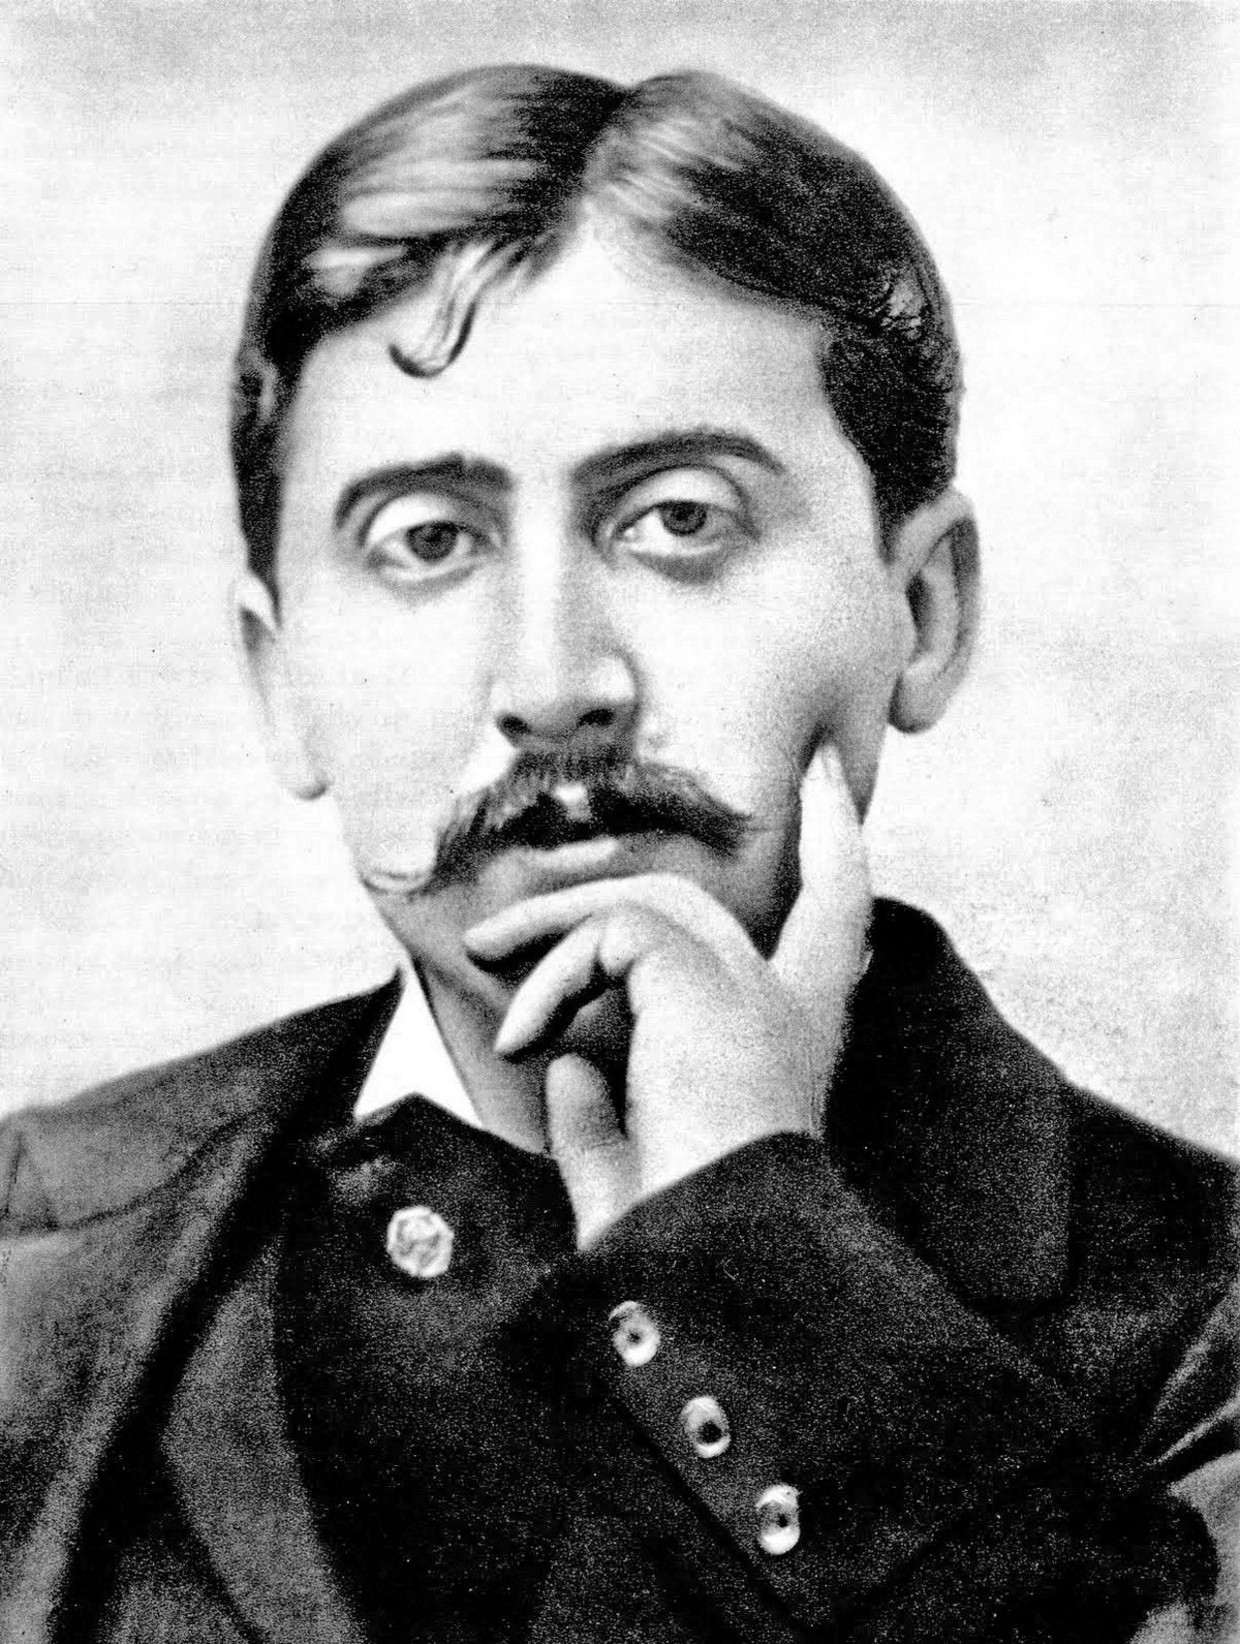 De lijstjes van schrijver Marcel Proust kom je al decennialang tegen in allerlei vormen. Beeld 